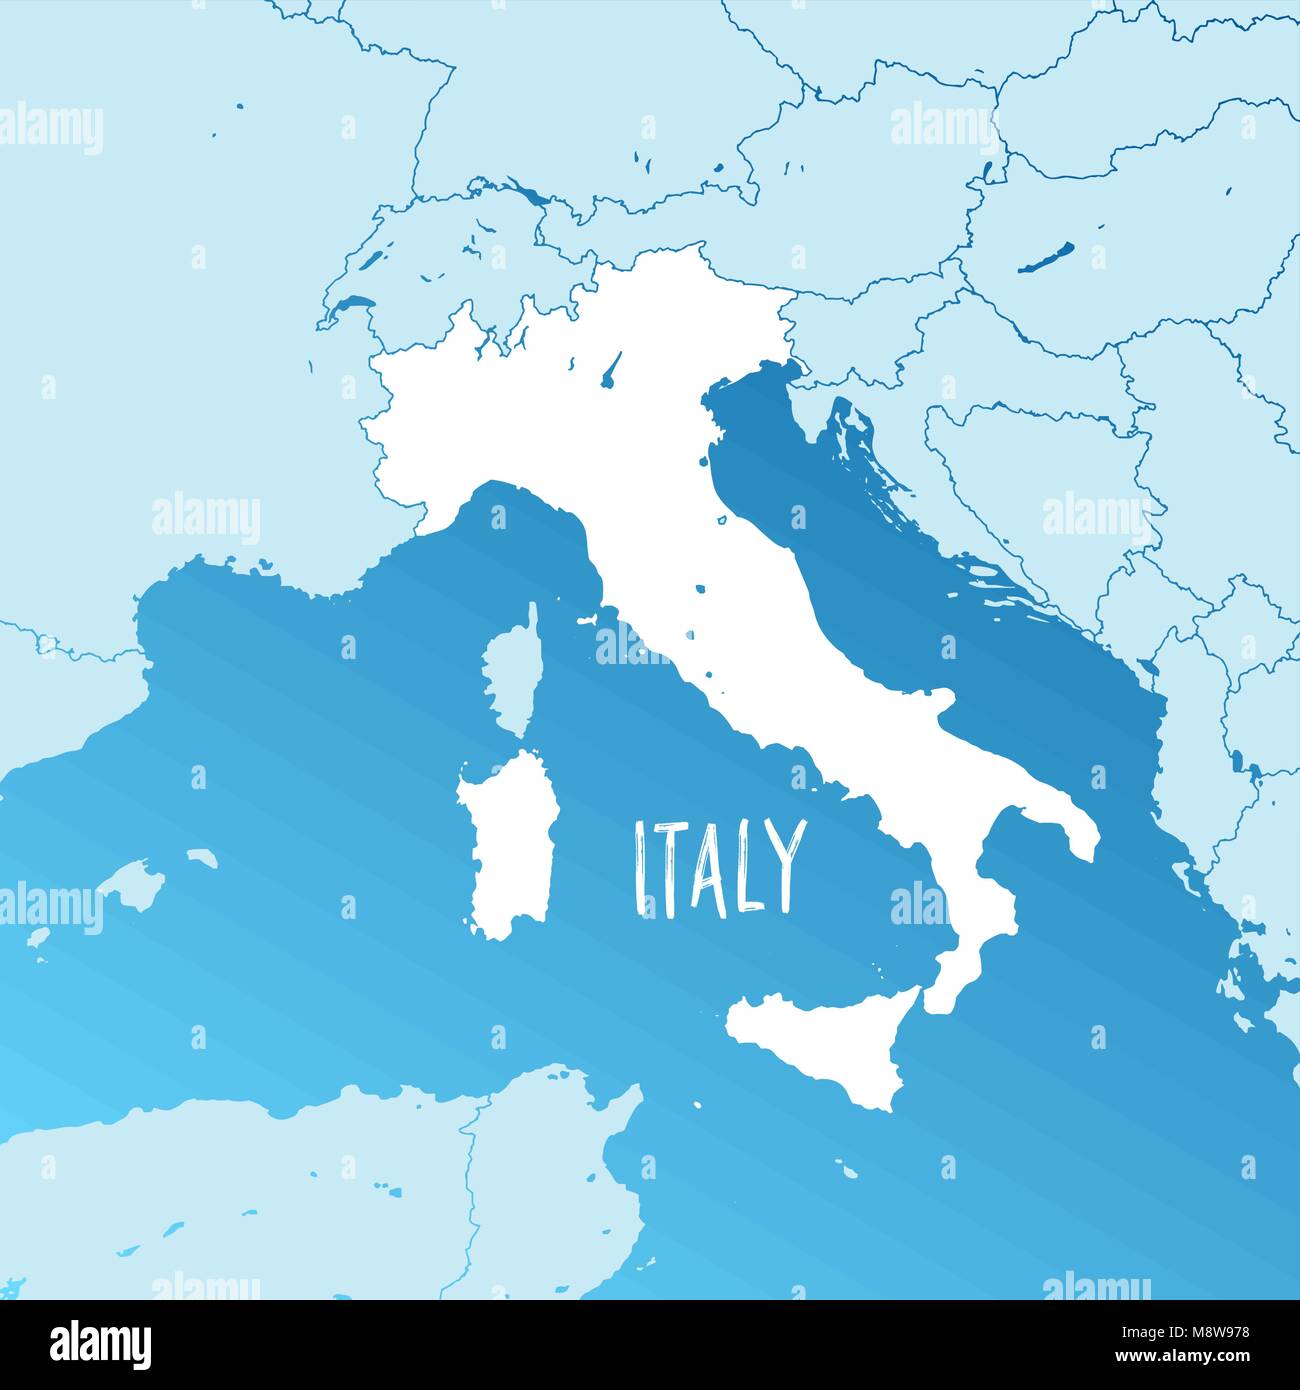 Italien Vektorkarte. Zweifarbiger Silhouette Version. Details für Grenzen, Nachbarn und die Inseln. Verwendbar für Travel Marketing, Immobilien und Kabinett Stock Vektor